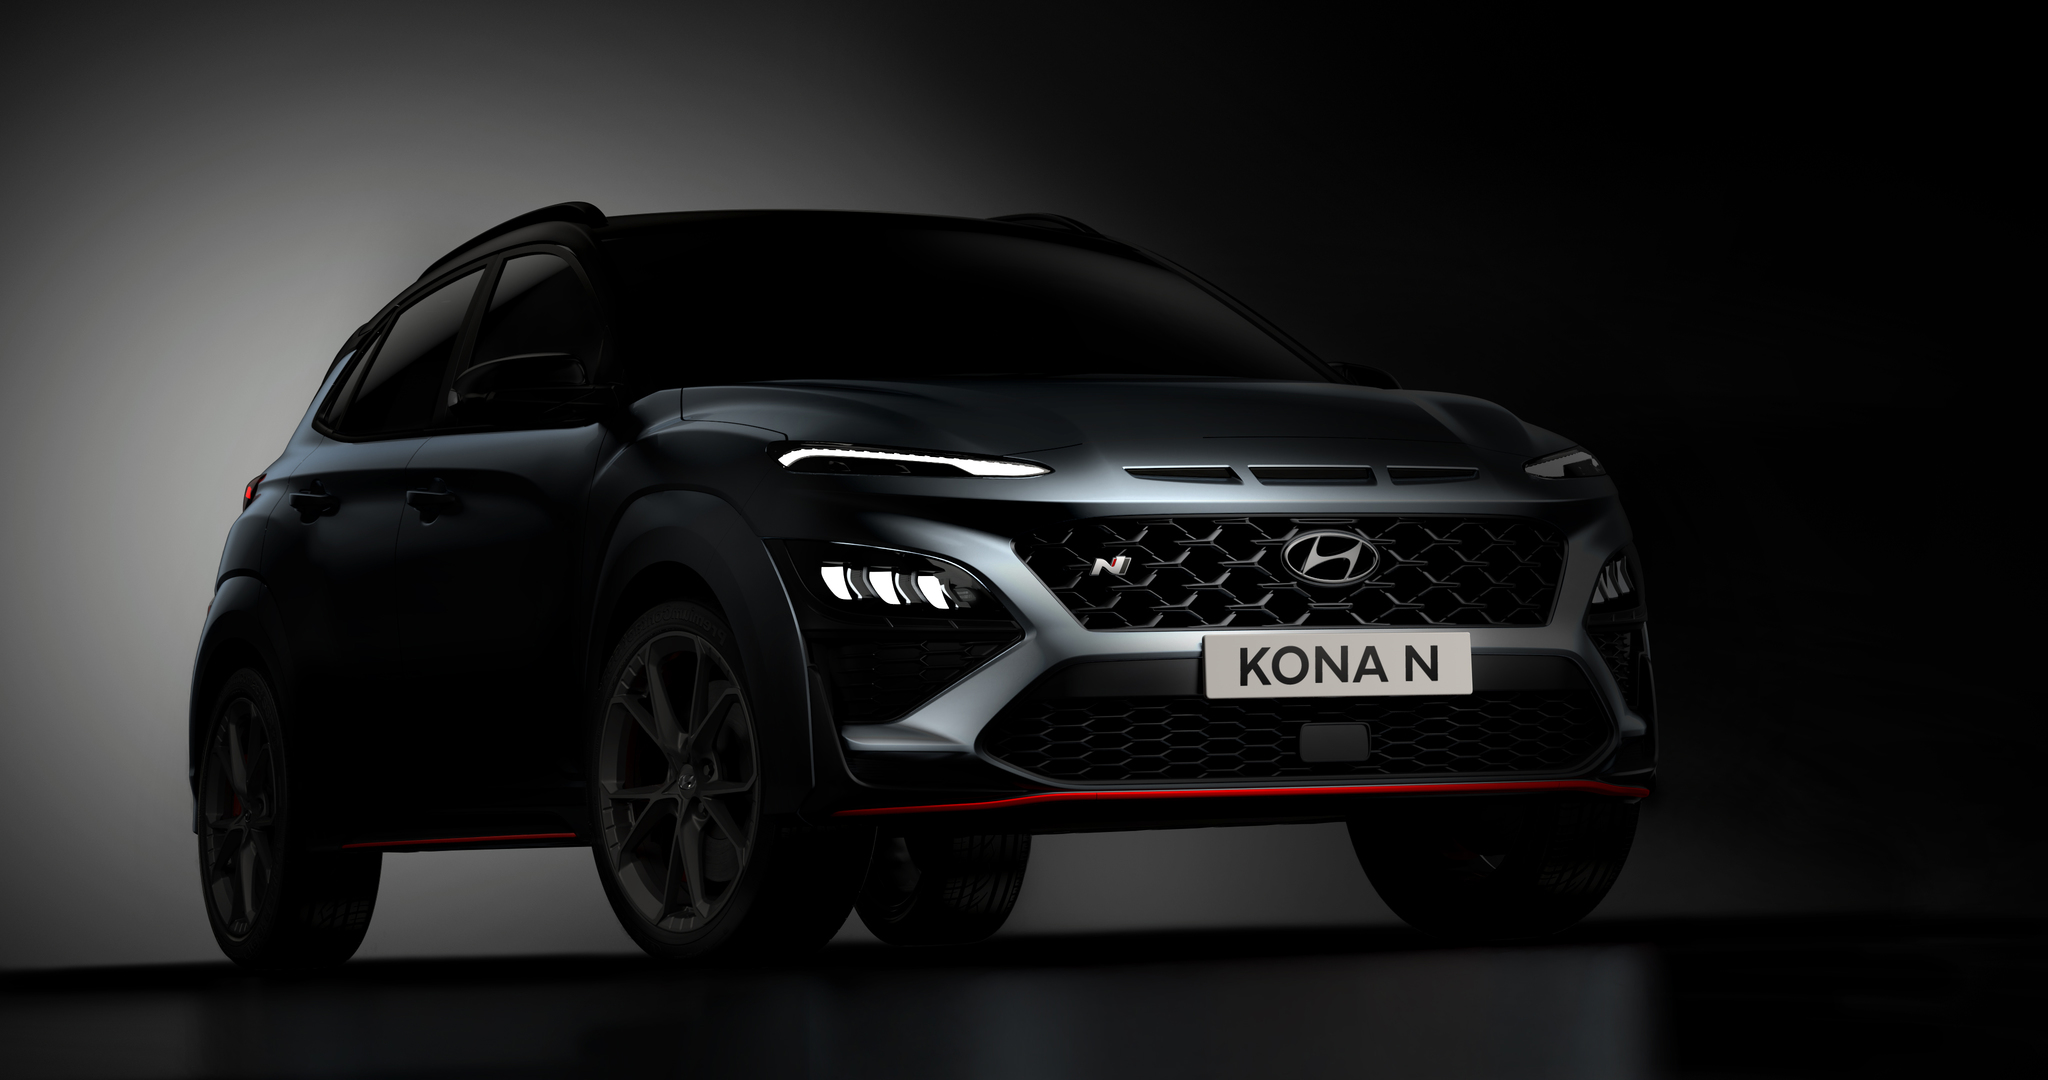 Primeras fotos del Hyundai Kona N, el 'hot SUV' que se estrena en la marca